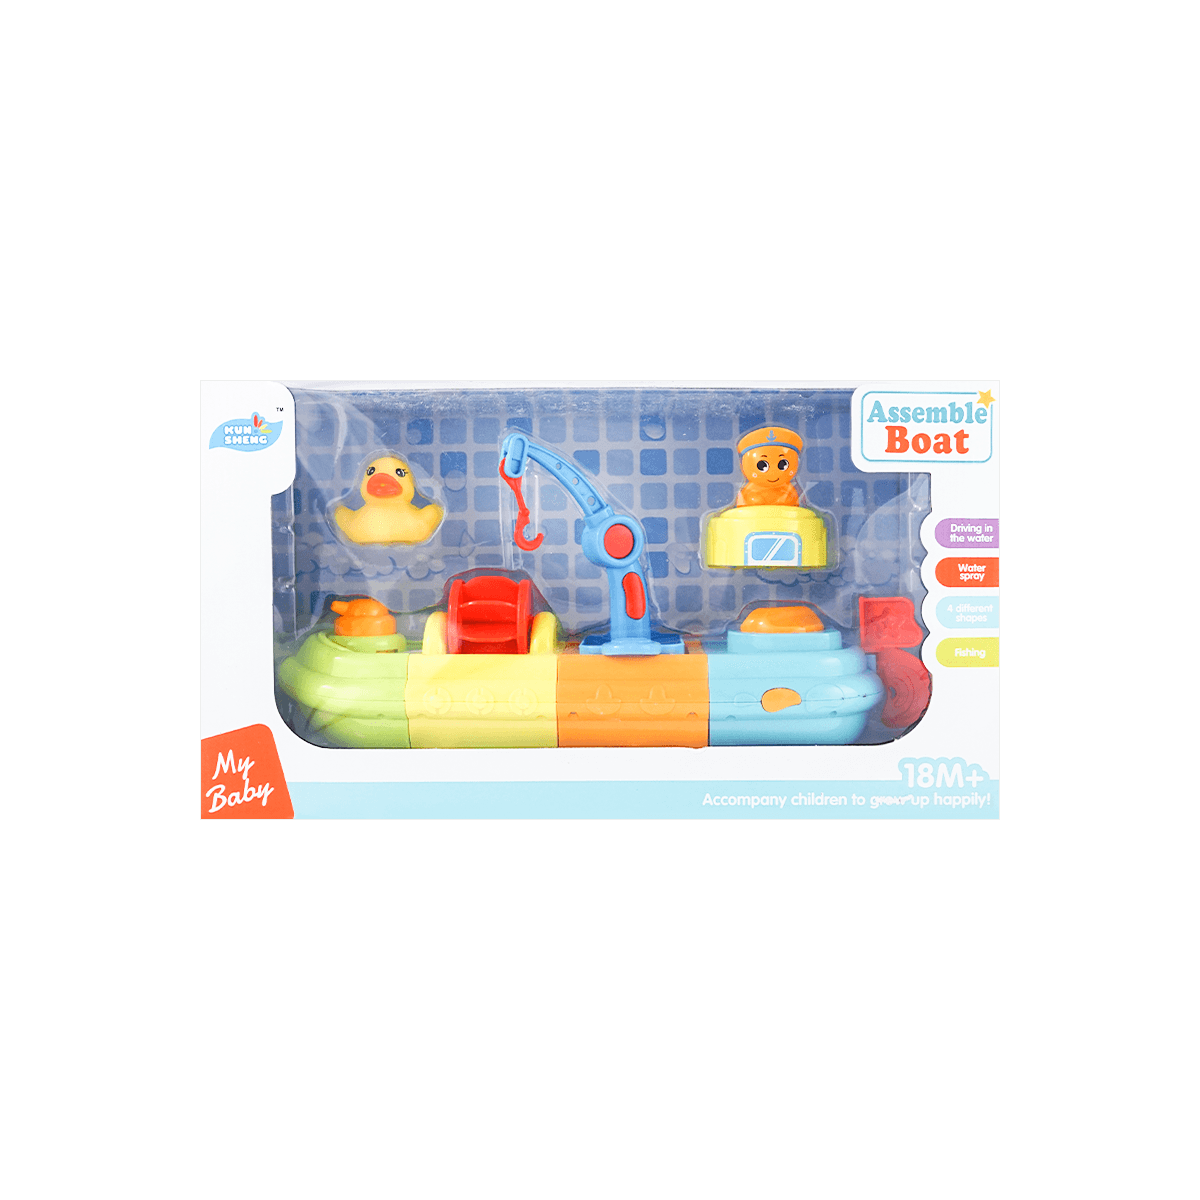 儿童玩具 浴室可DIY拼装彩色小船 怎么样 - 亚米网